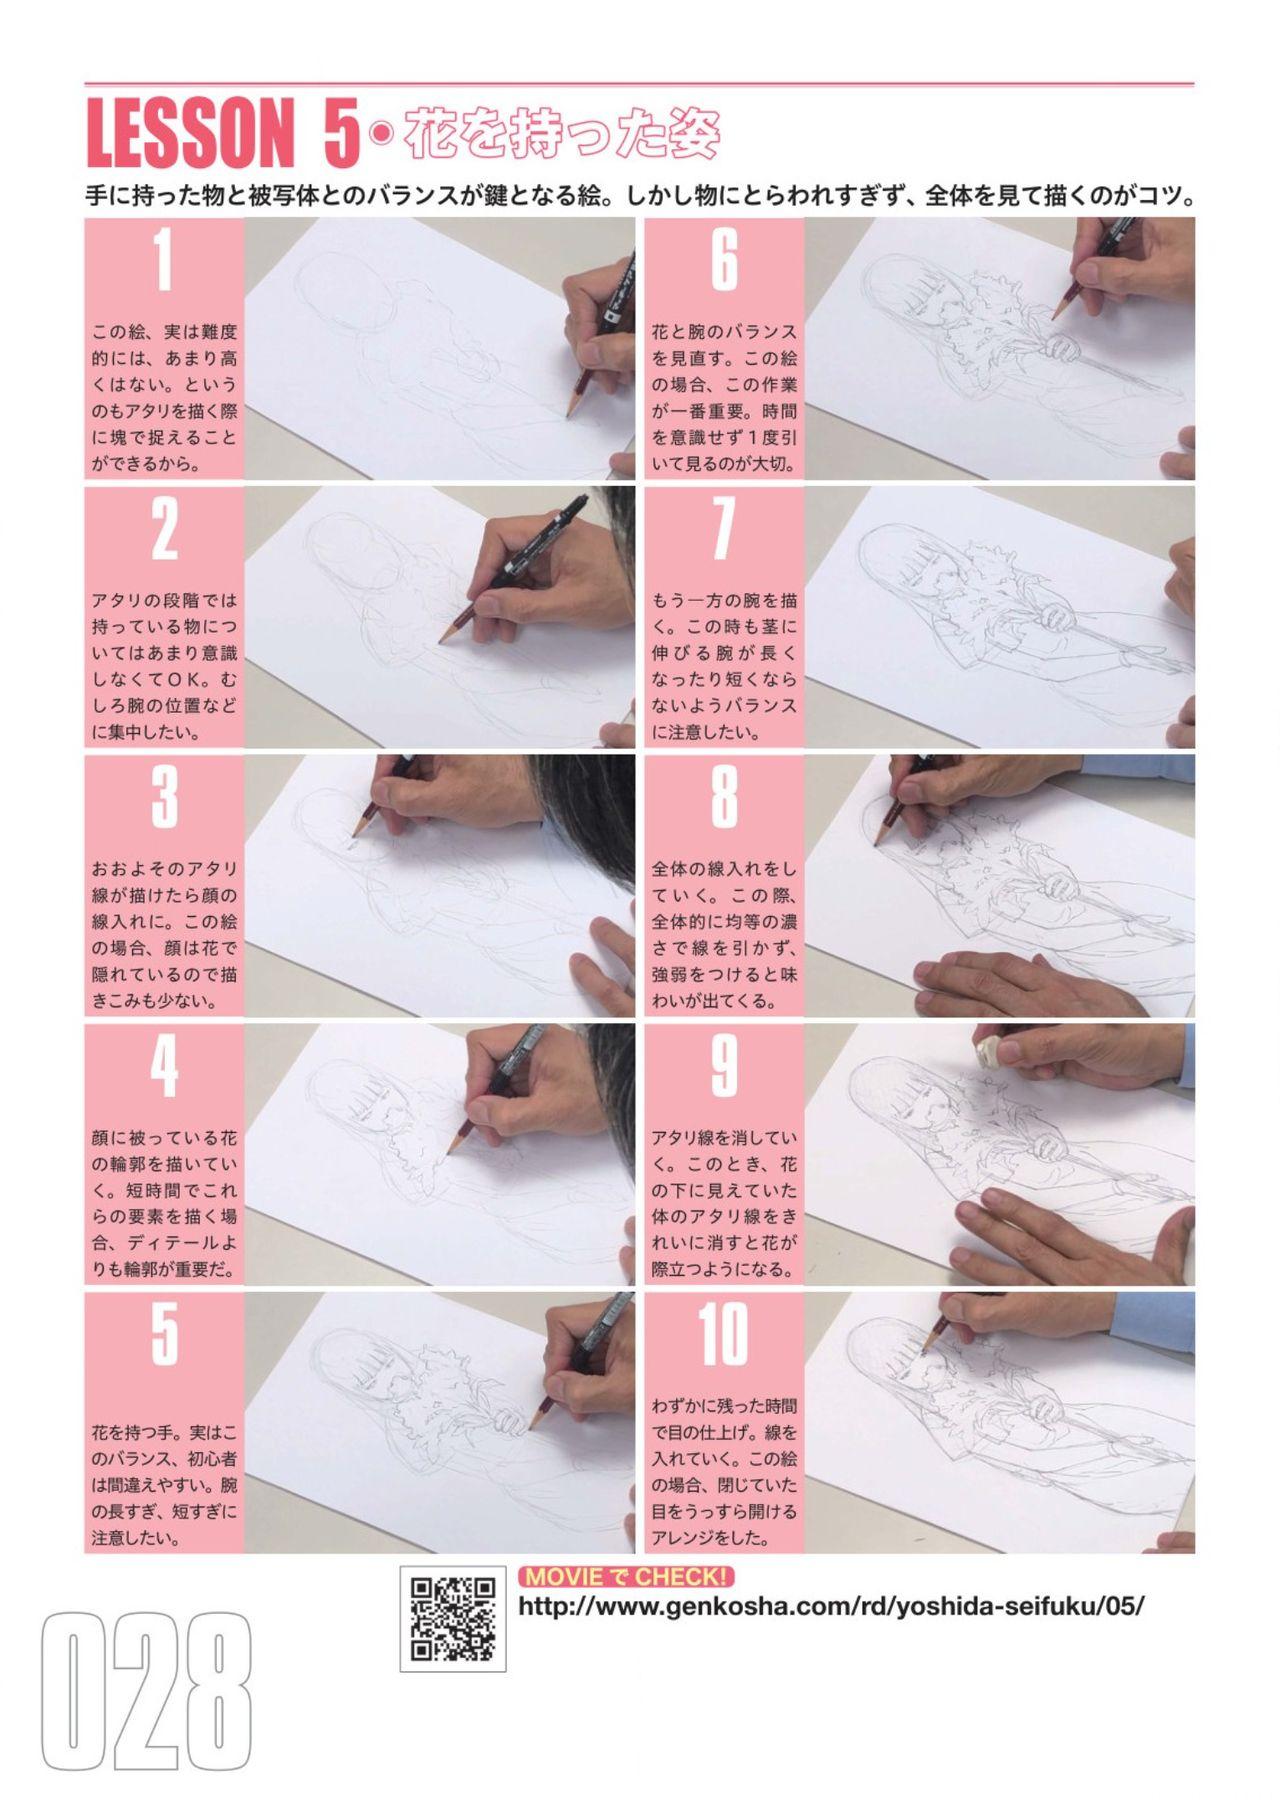 Toru Yoshida Tips for drawing women in 10 minutes 270 Uniforms 29